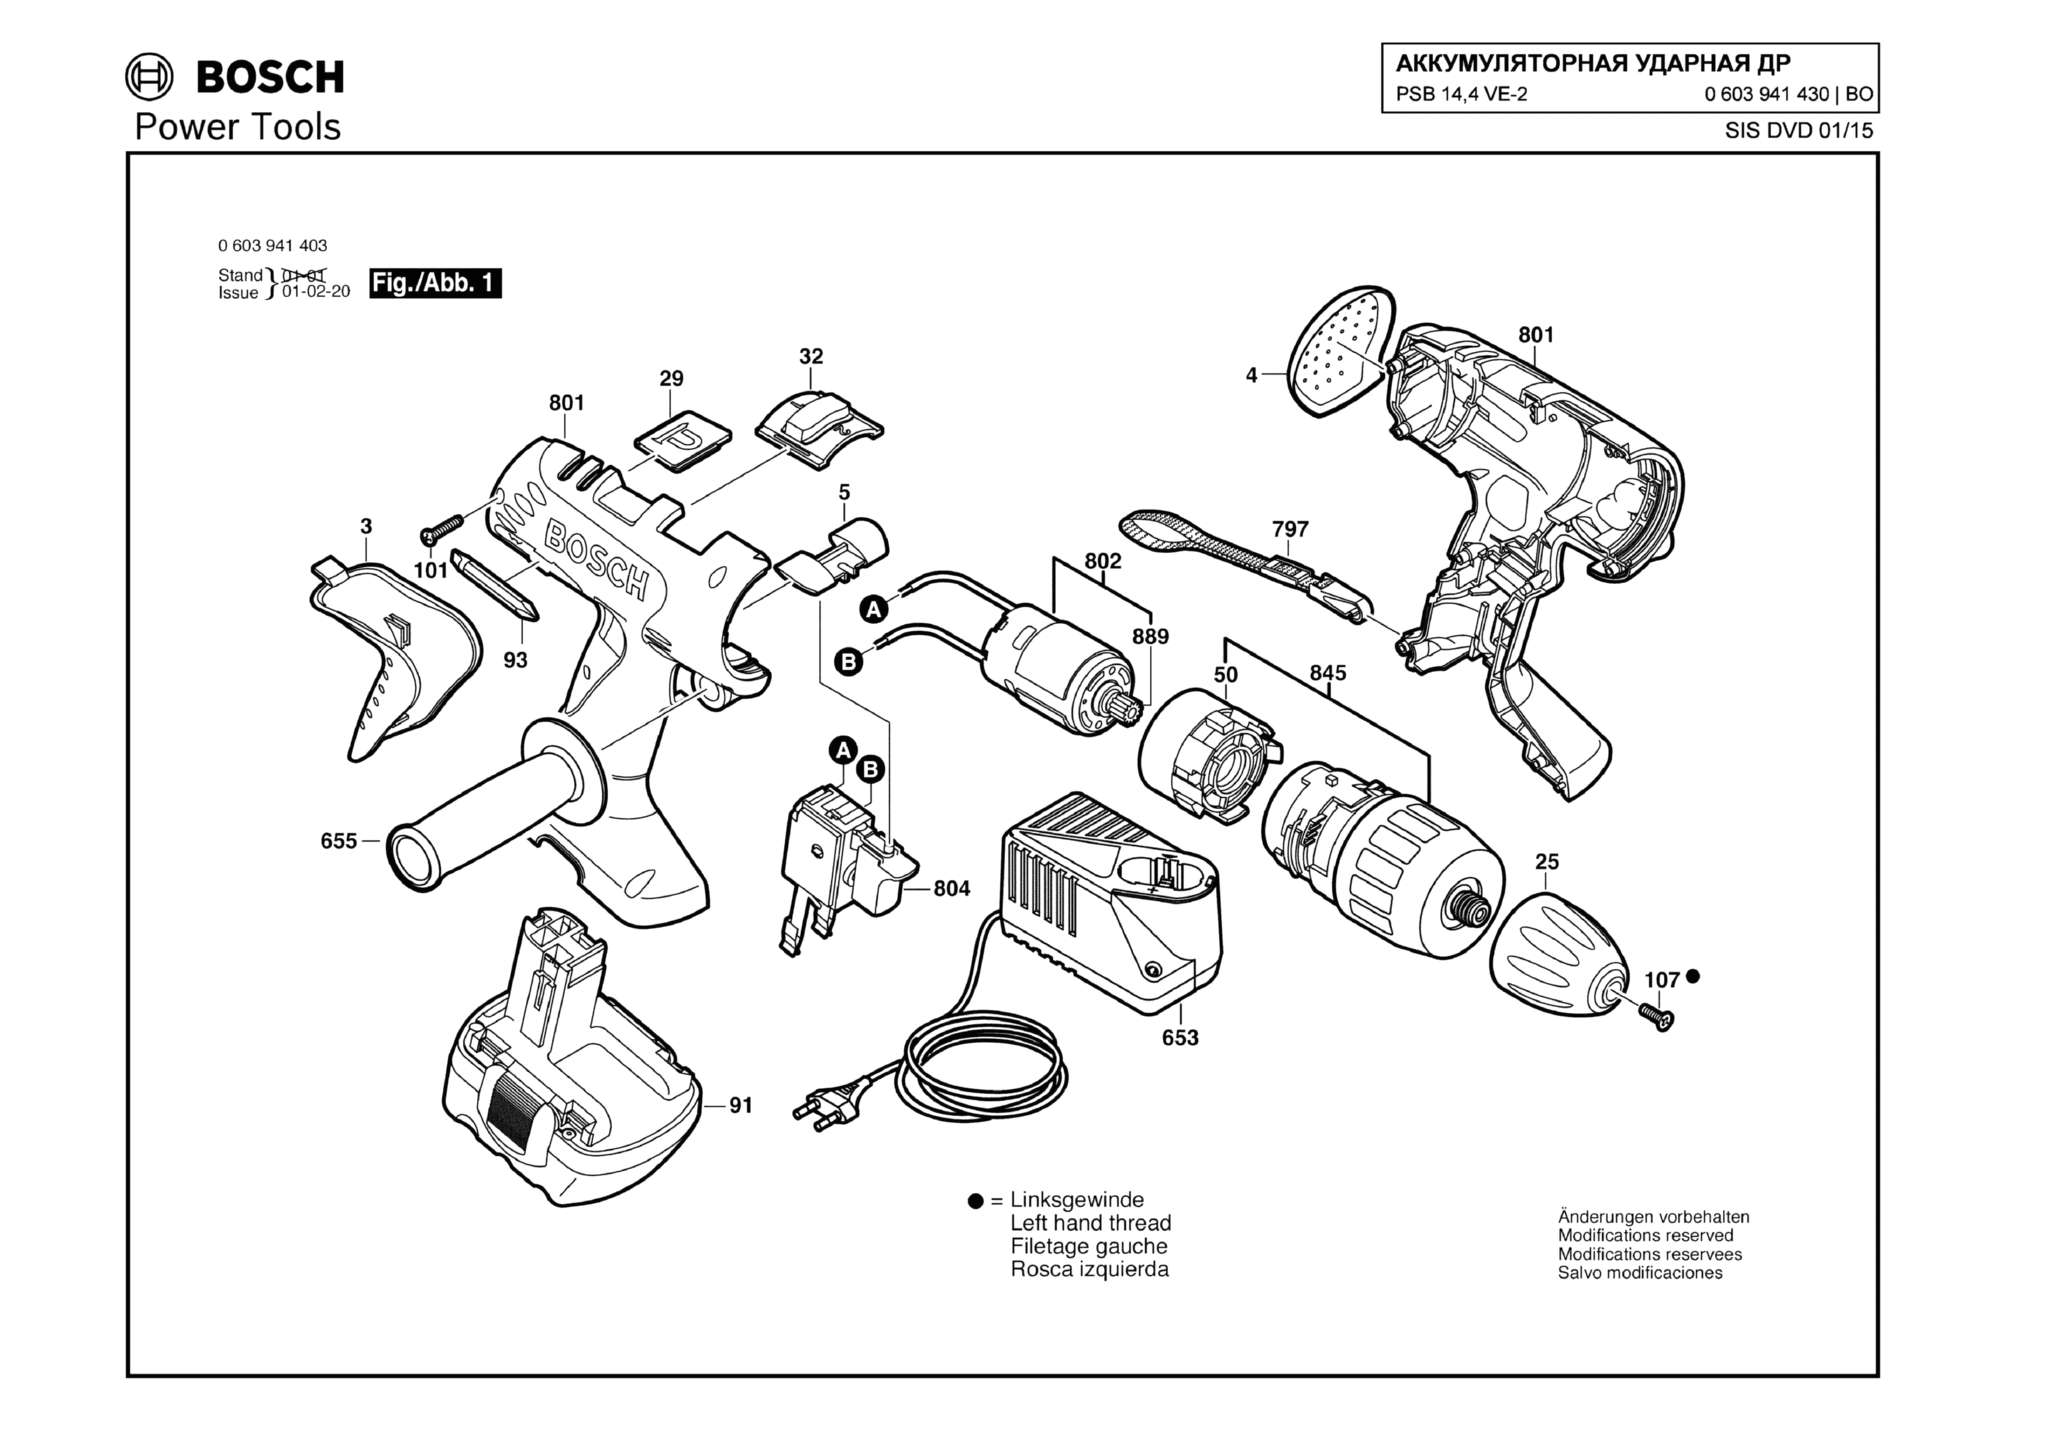 Запчасти, схема и деталировка Bosch PSB 14,4 VE-2 (ТИП 0603941430)